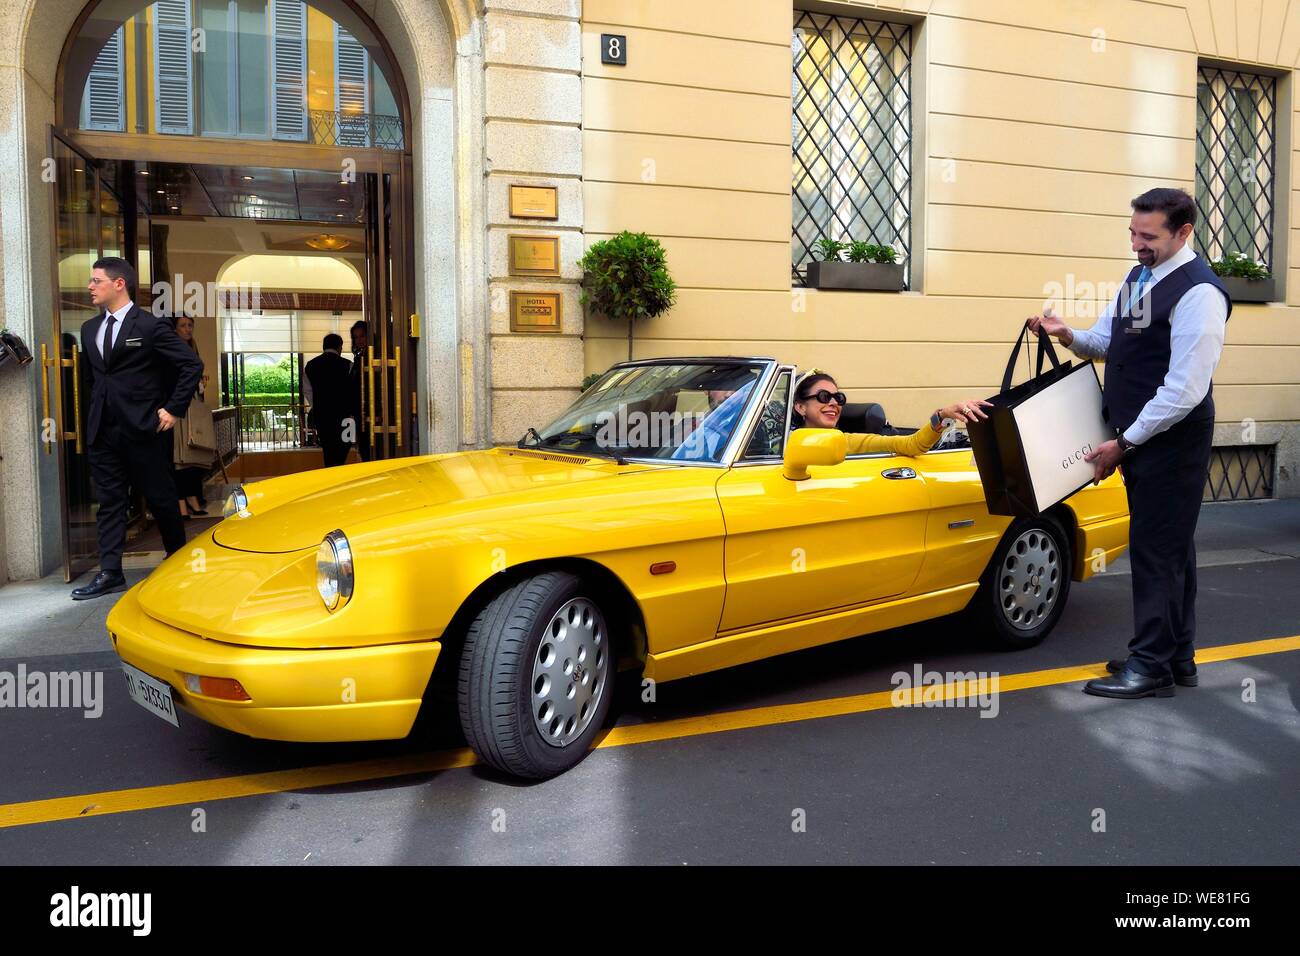 Italien, Lombardei, Mailand, Mode Viereck (Quadrilatero della moda), Alfa Romeo Duetto Spider gelb Cabrio vor dem Four Seasons Hotel Milano, der Portier bringt eine Gucci Tasche Stockfoto